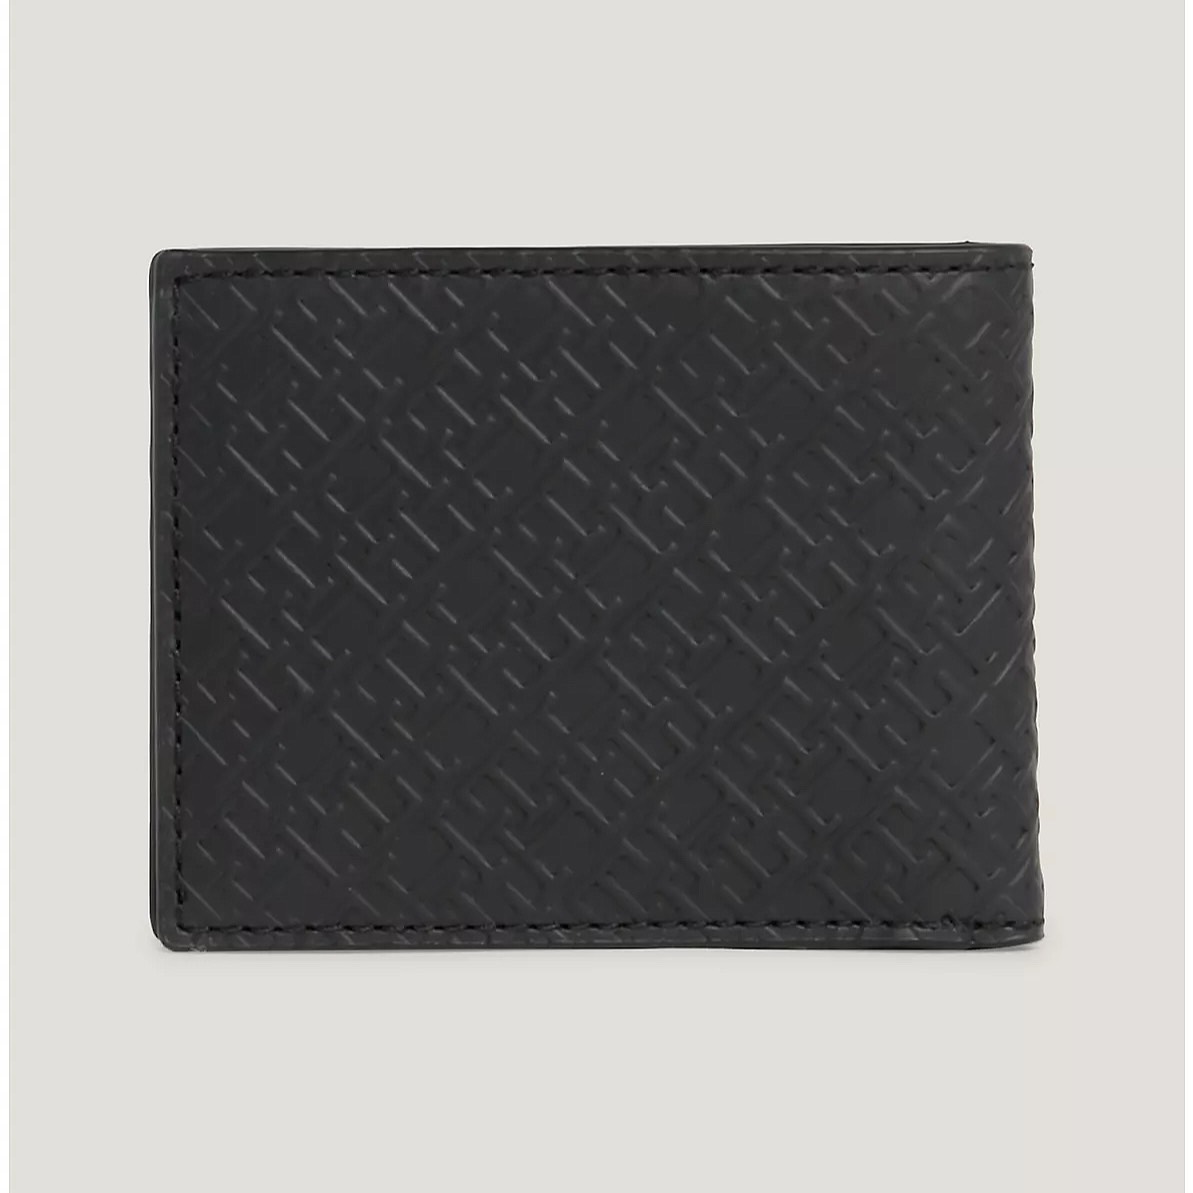 Ví Tommy Hilfiger Monogram Mini Credit Card Wallet Black AM12175 001